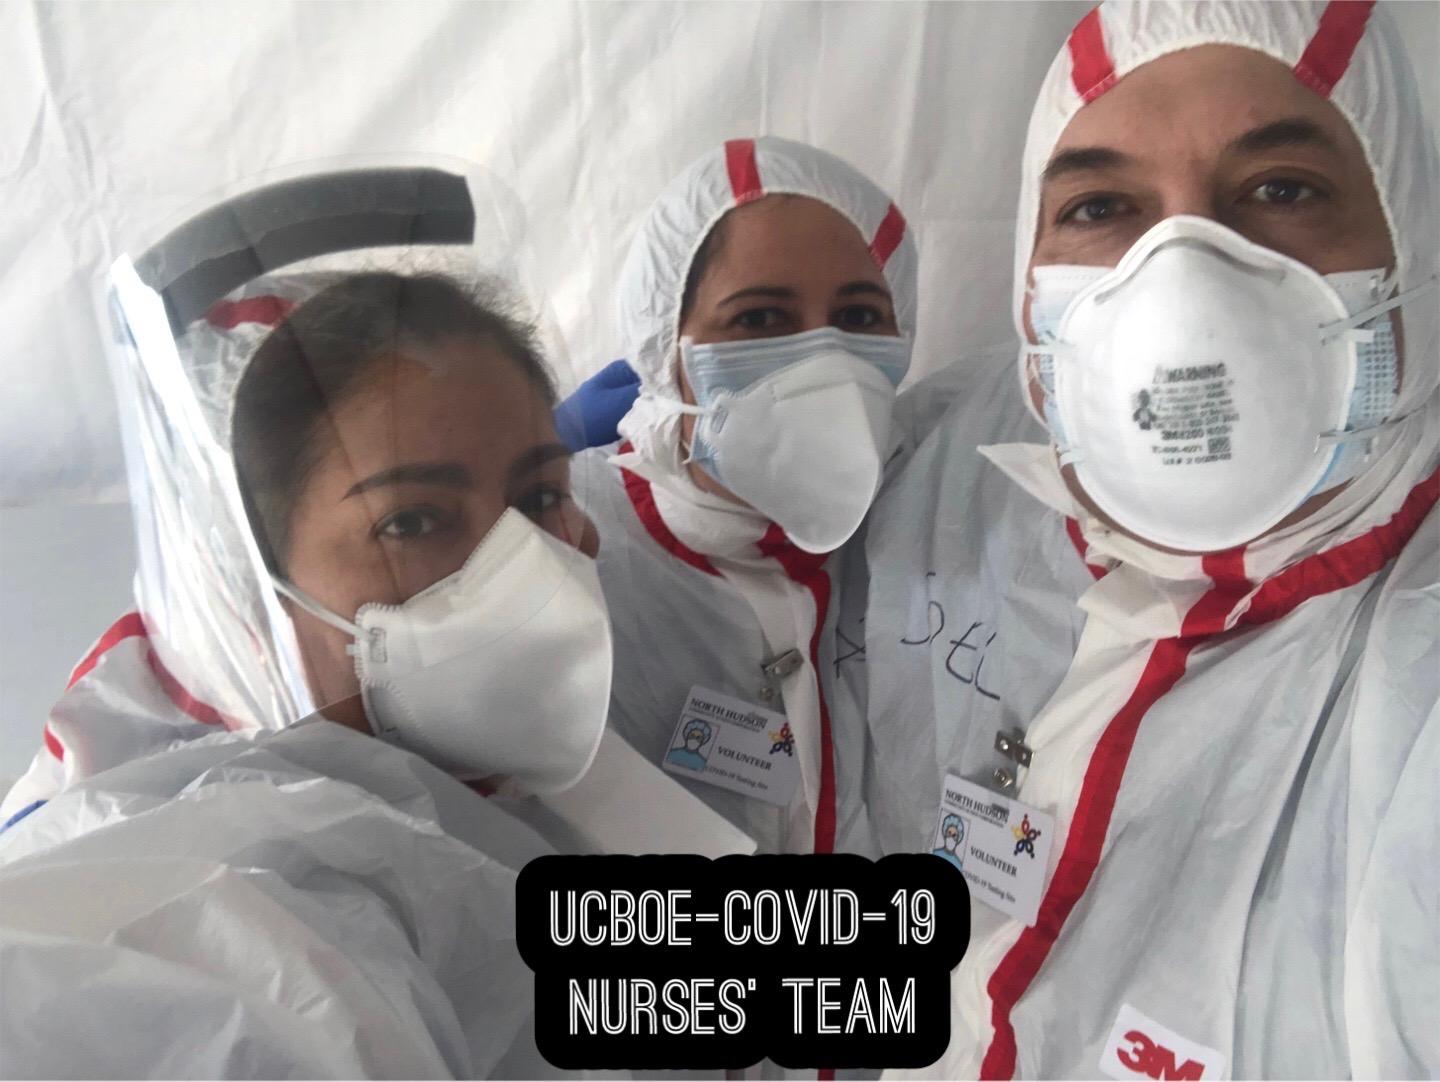 3 UC nurses in hazmat suits